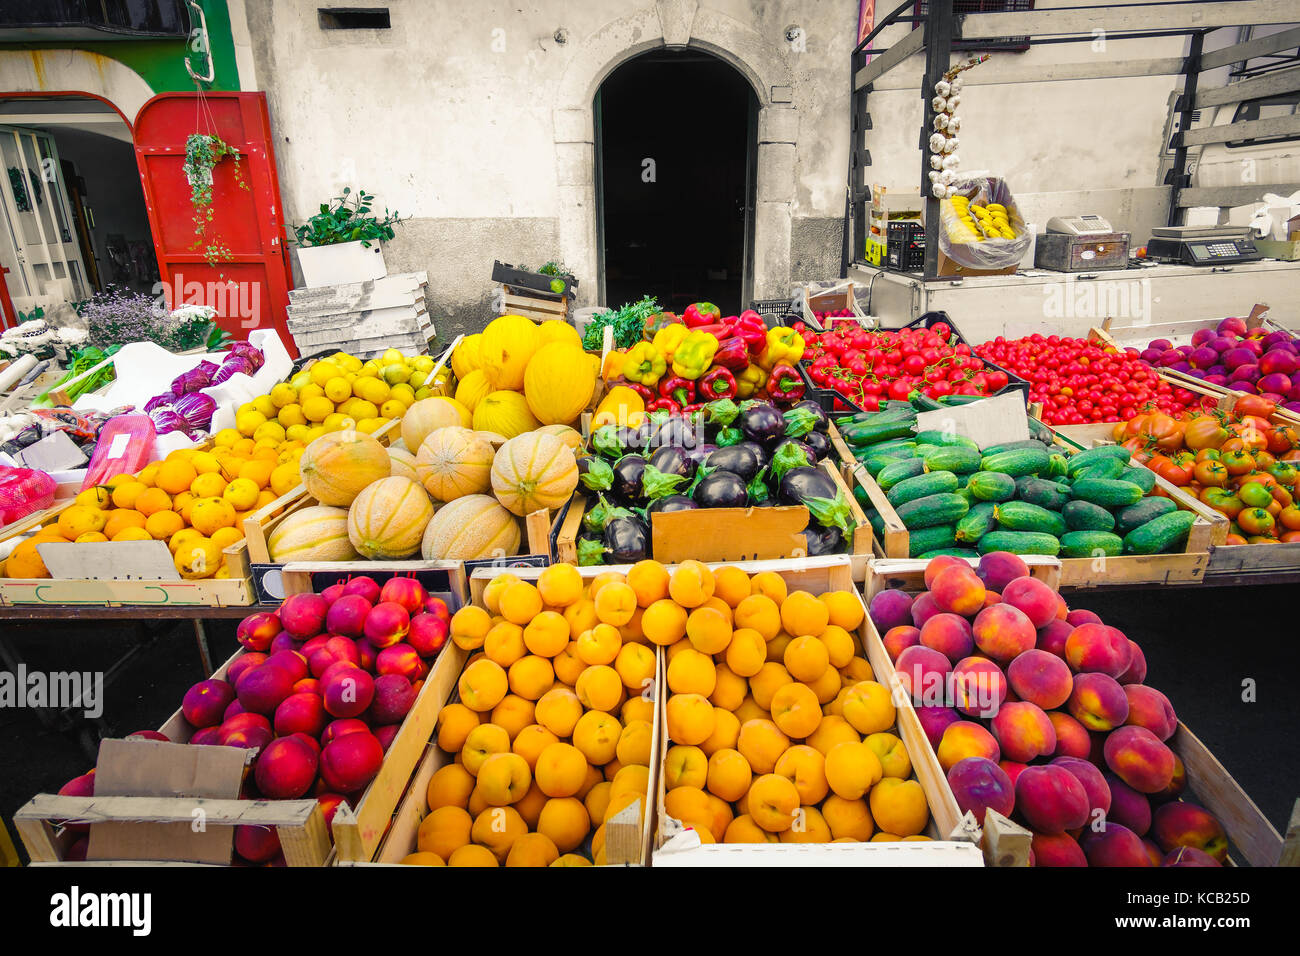 Lokaler Markt greengrocery Food miles Früchte und Gemüse Regale Stockfoto